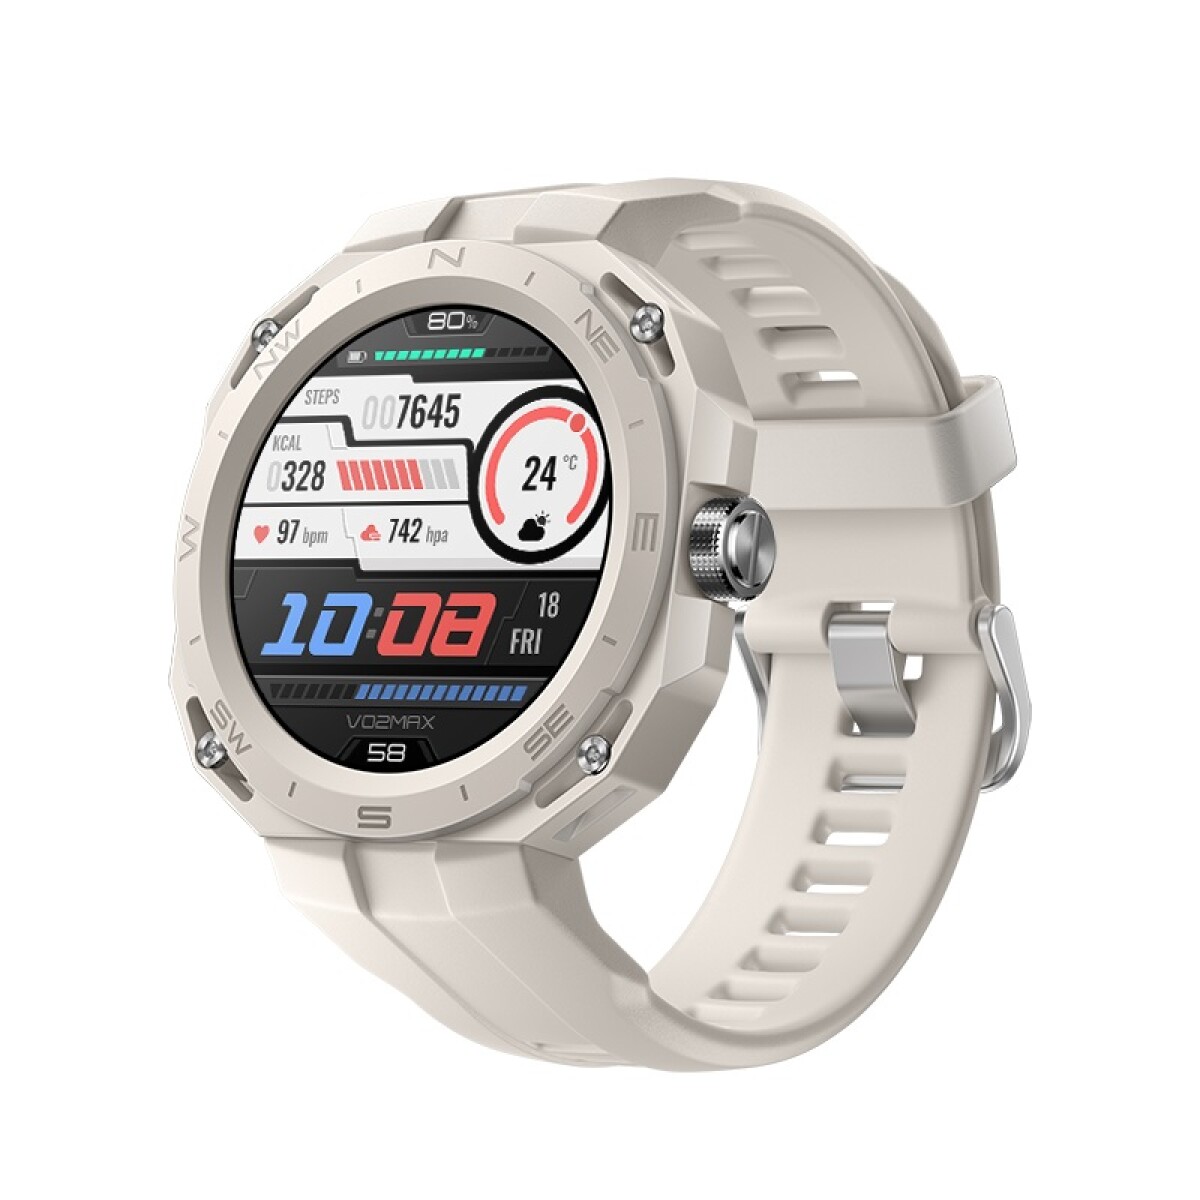 Reloj Smartwatch HUAWEI GT Cyber 1.32' AMOLED GPS BT - Space Gray 